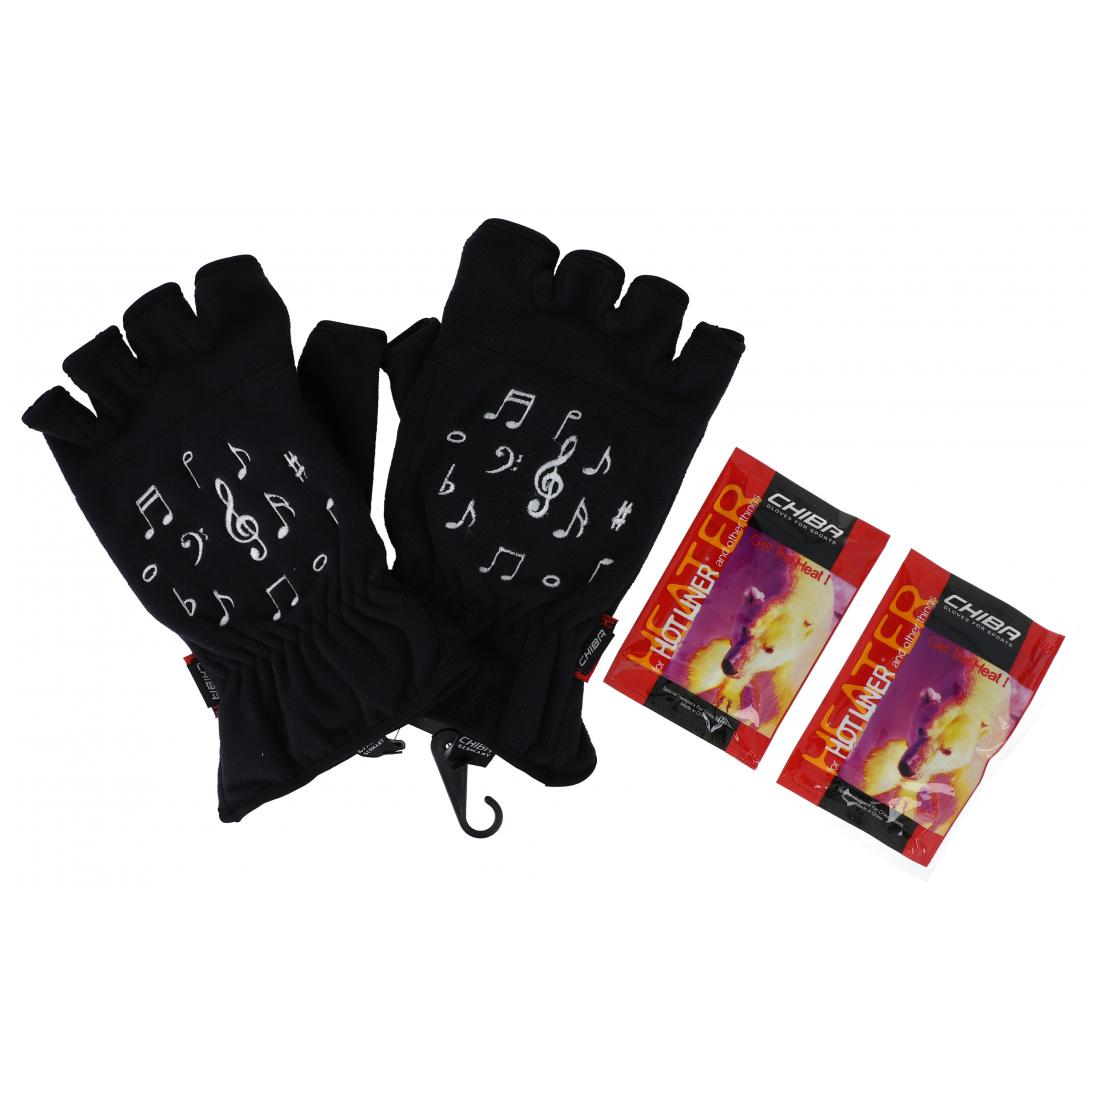 Noten-Motiv-Fleece-Handschuhe, zwei Größen, Kurzfinger, mit Heizkissen - Größe: S/M 